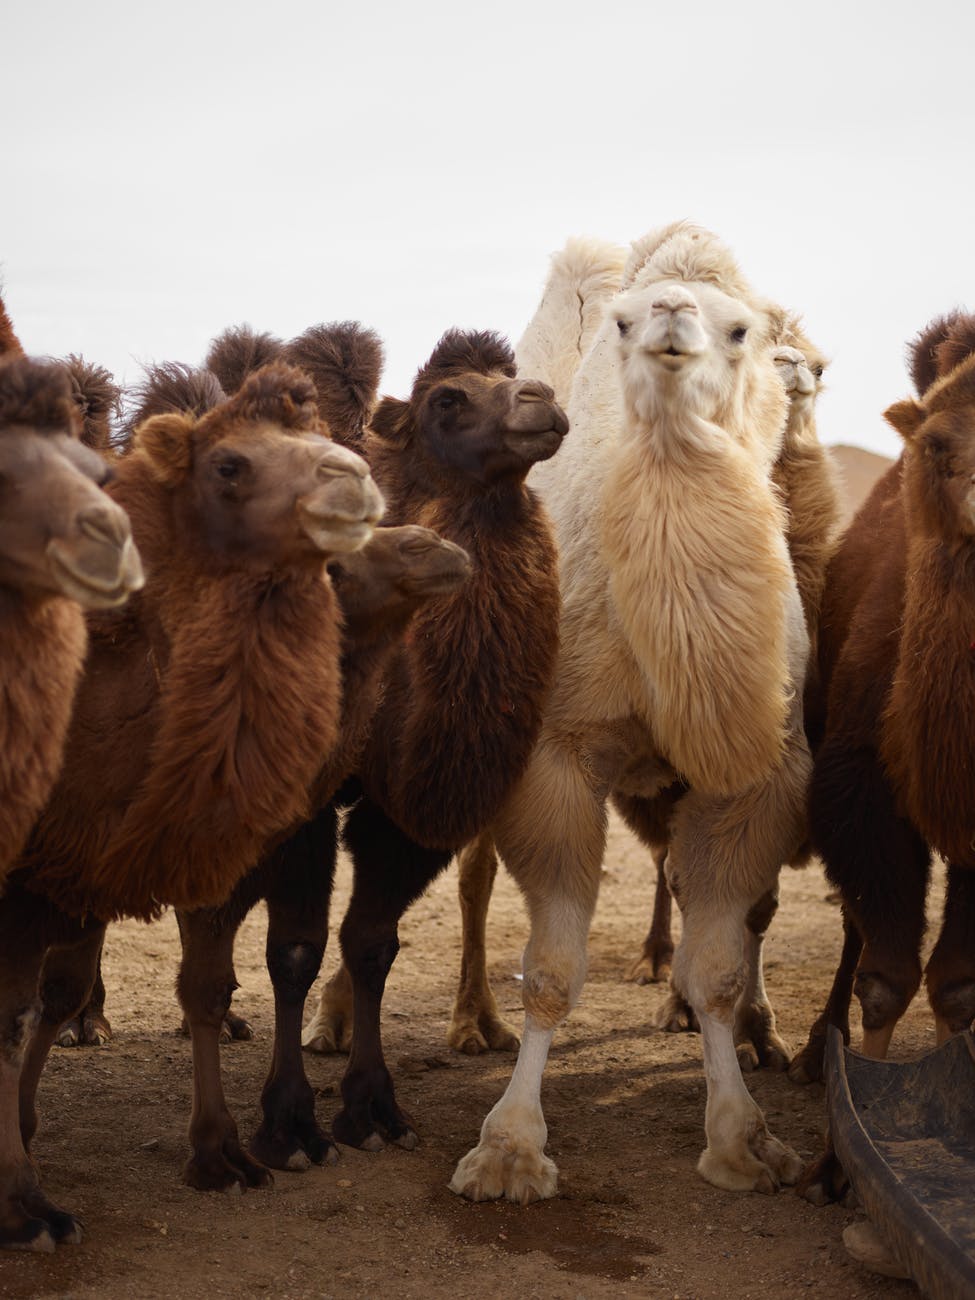 flock of camels in desert area